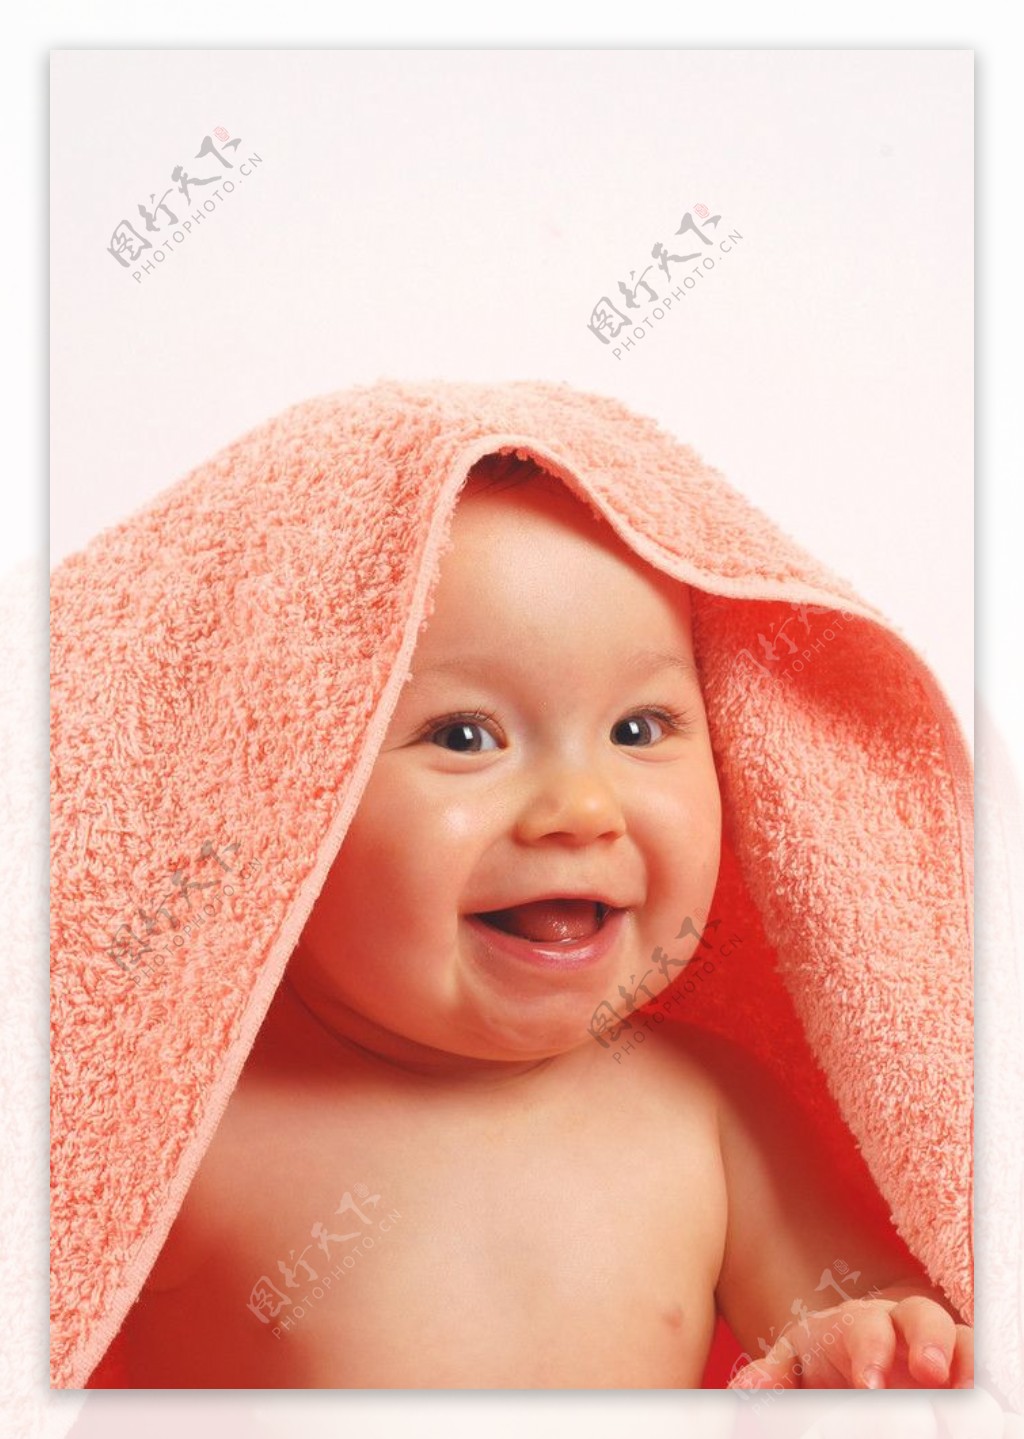 头盖毛巾的婴儿图片